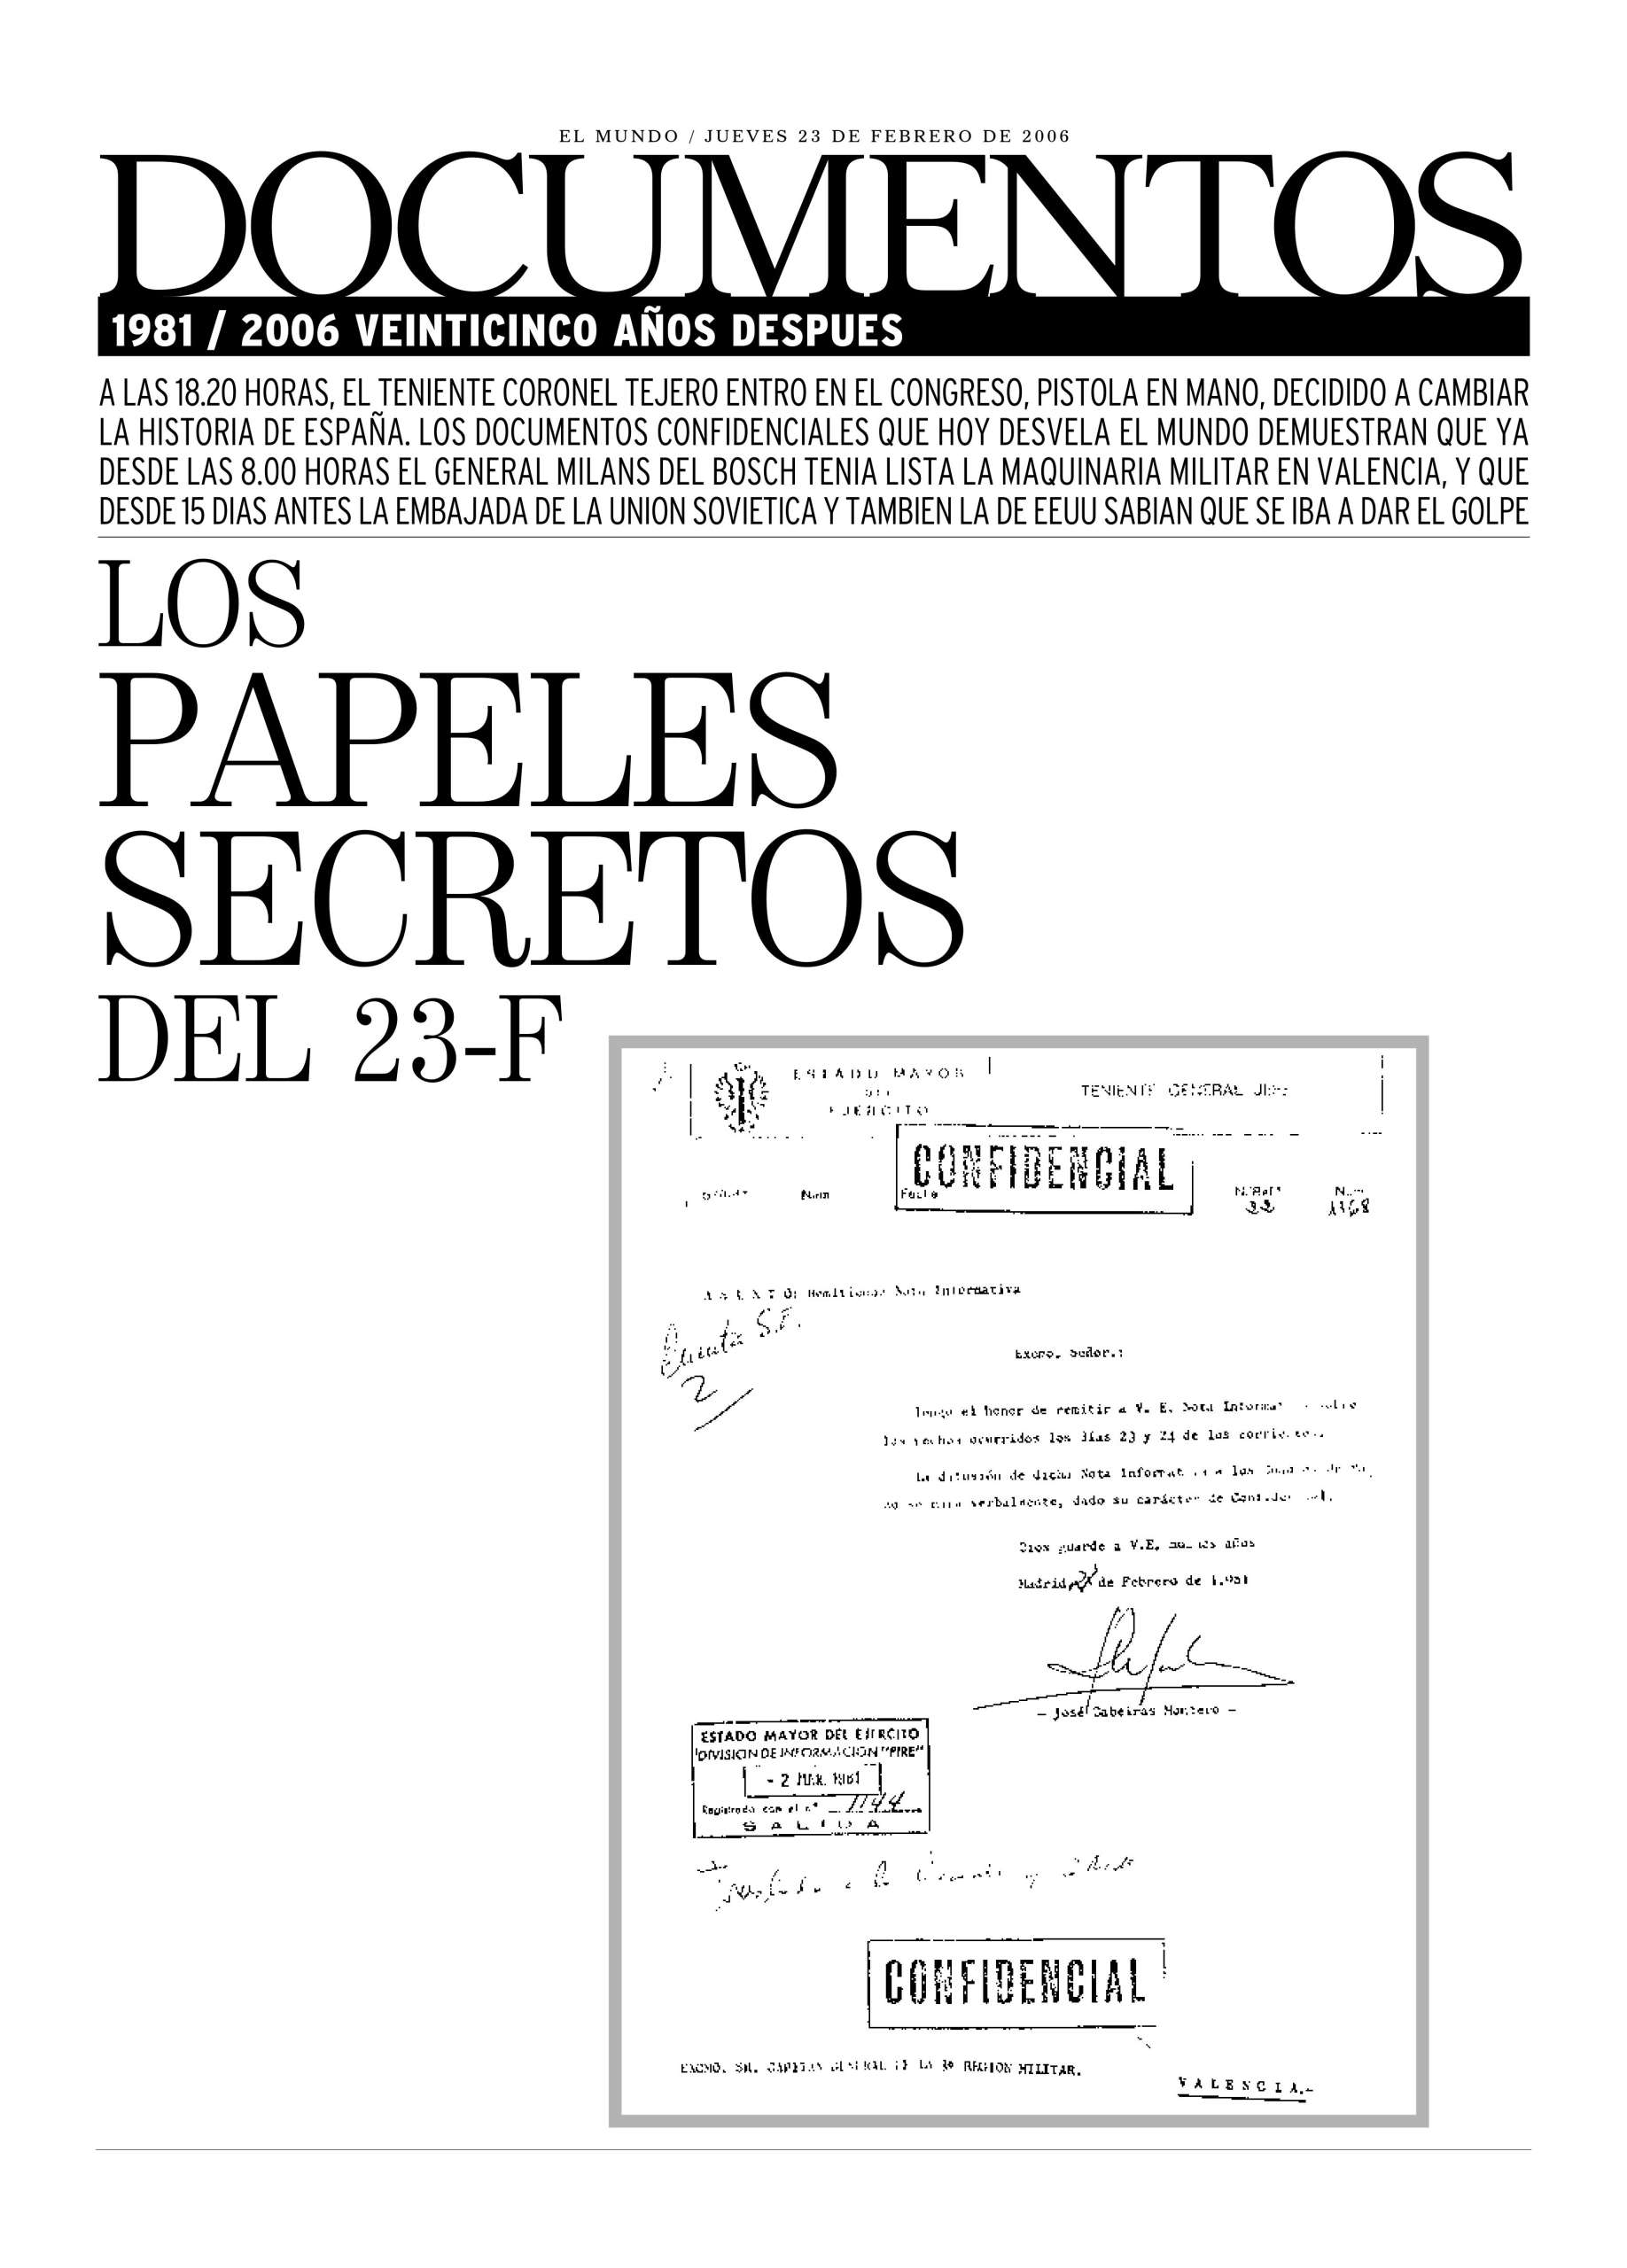 El Mundo publicó 'Los papeles secretos del 23-F' el 23 de febrero de 2006